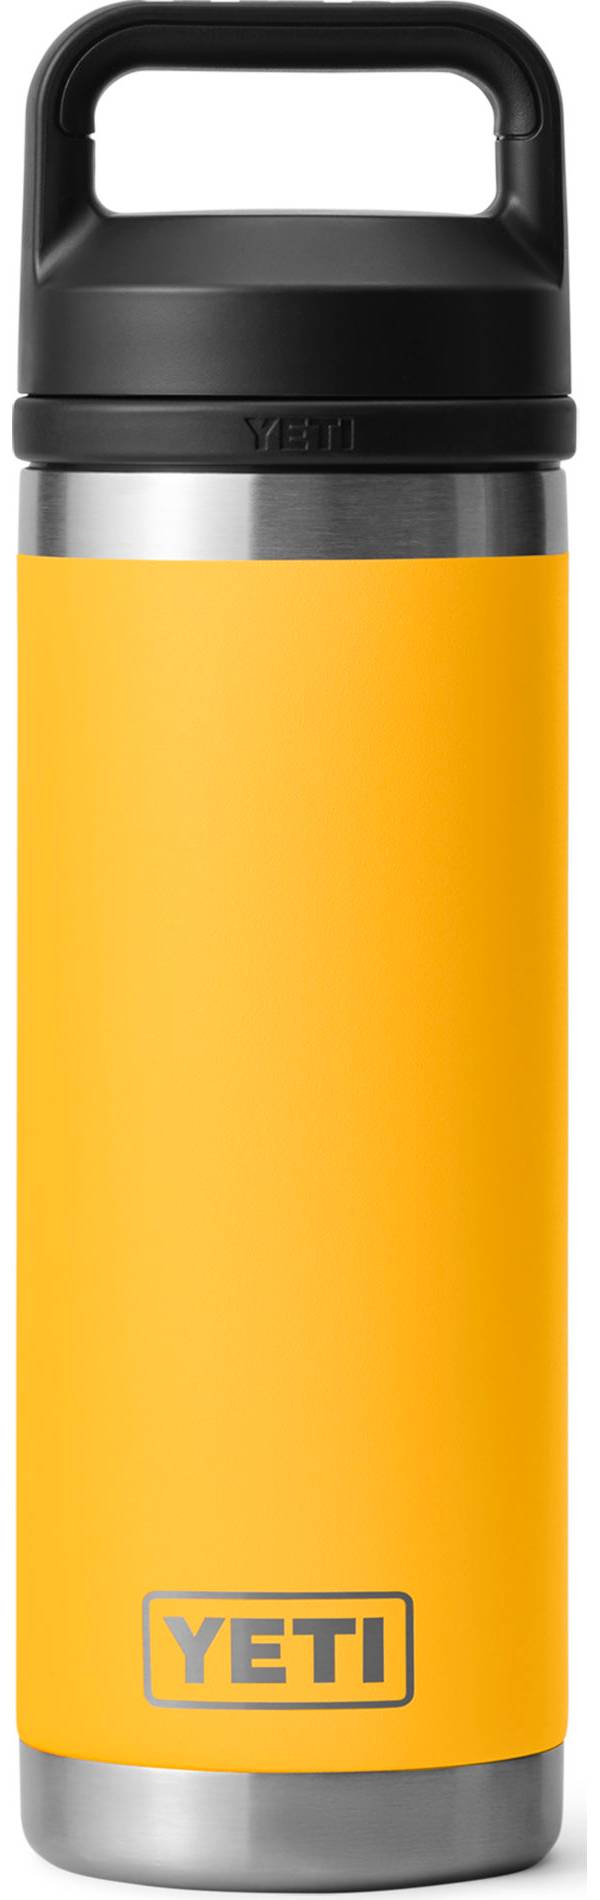 YETI 18 oz. Rambler Bottle with Chug Cap product image